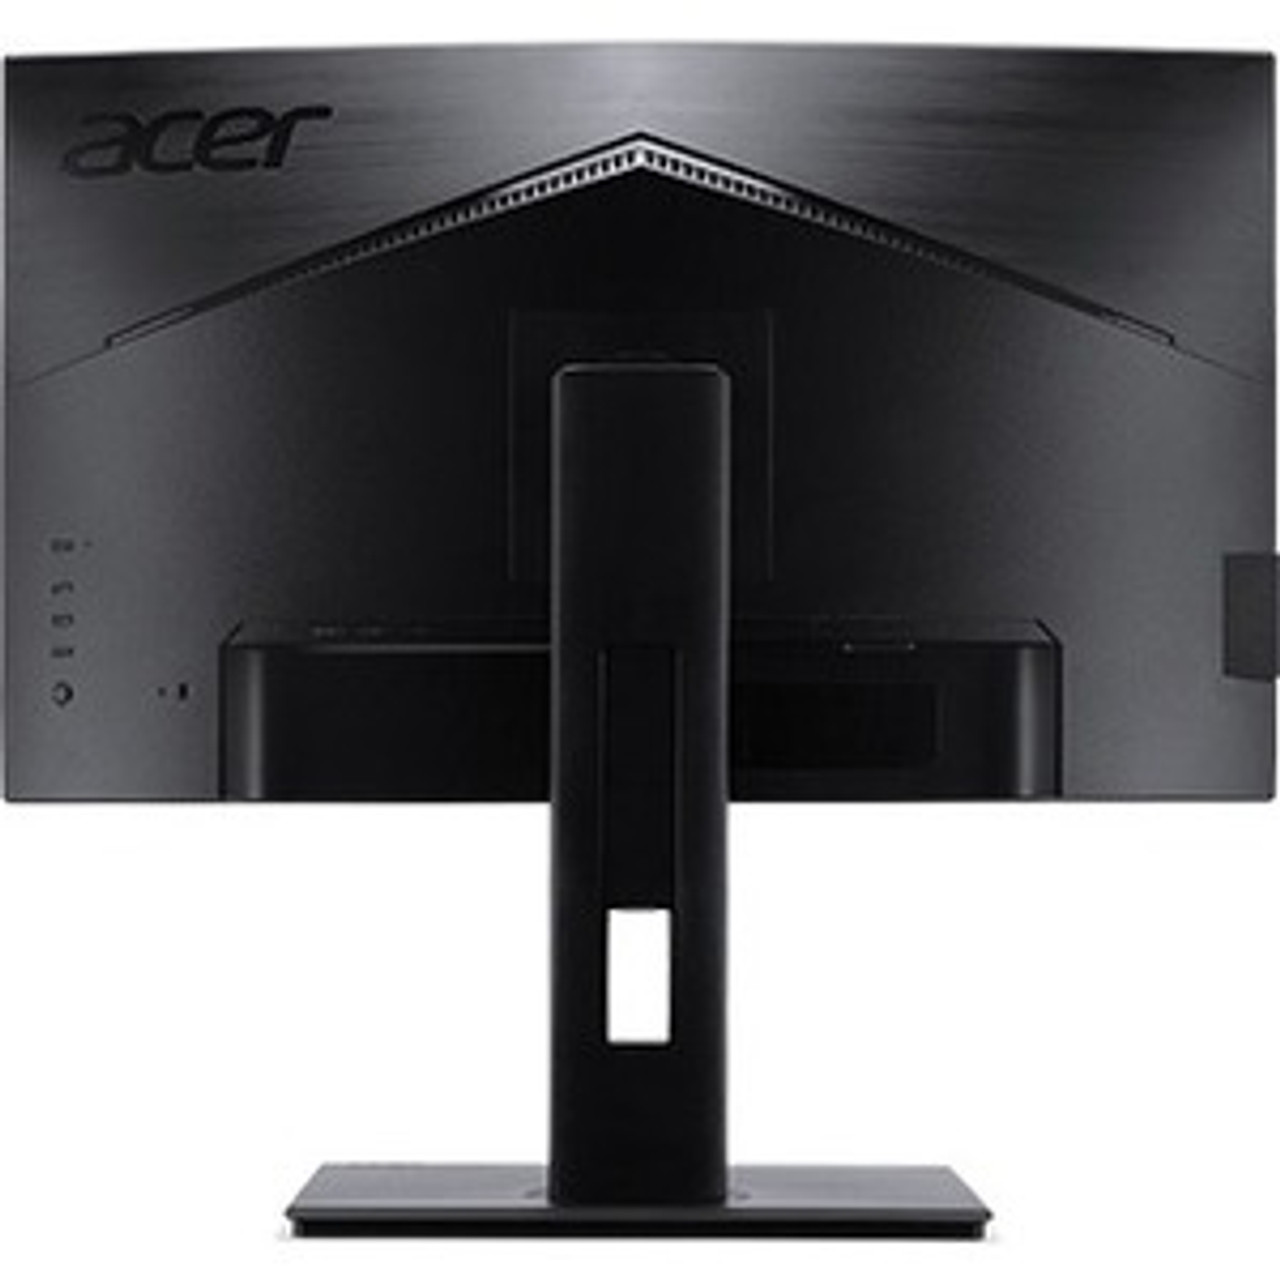 Acer BC270U 27" WQHD LED LCD Monitor -  UM.HB0AA.004